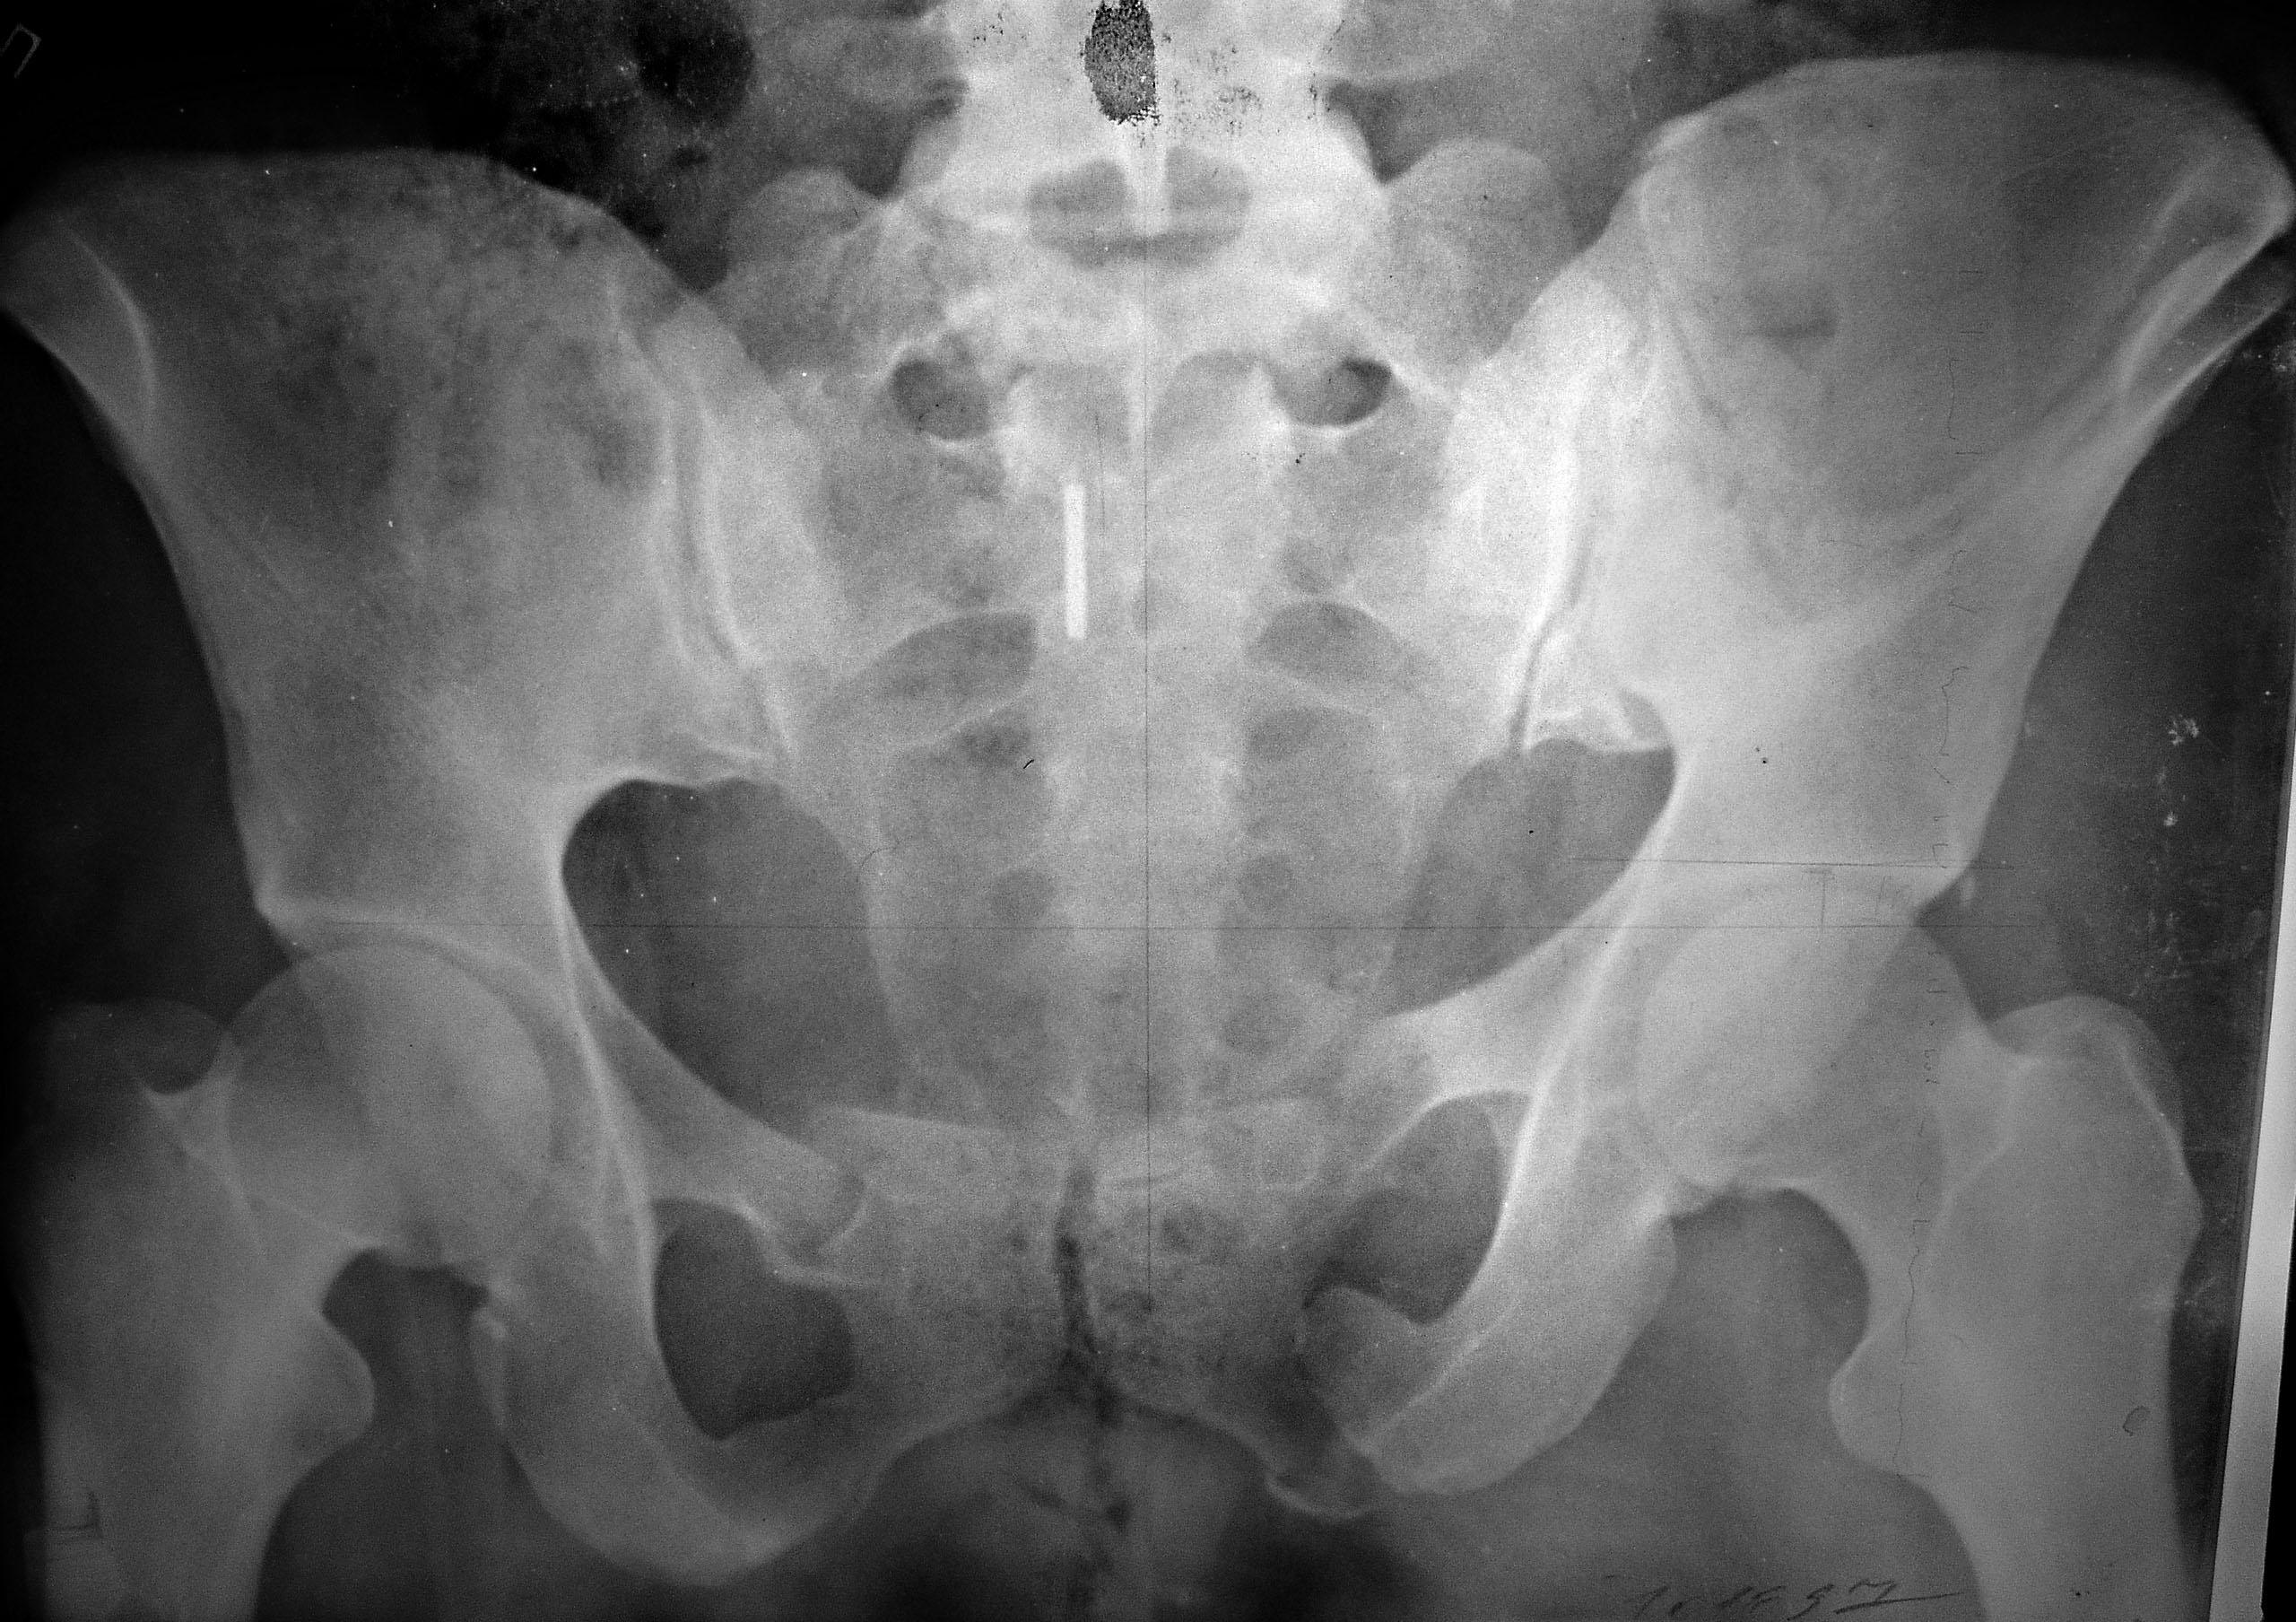 Крестец подвздошная кость. Перелом симфиза таза рентген. Краевой перелом подвздошной кости рентген. Перелом Мальгеня таза рентген. Перелом седалищной и лонной кости рентген.